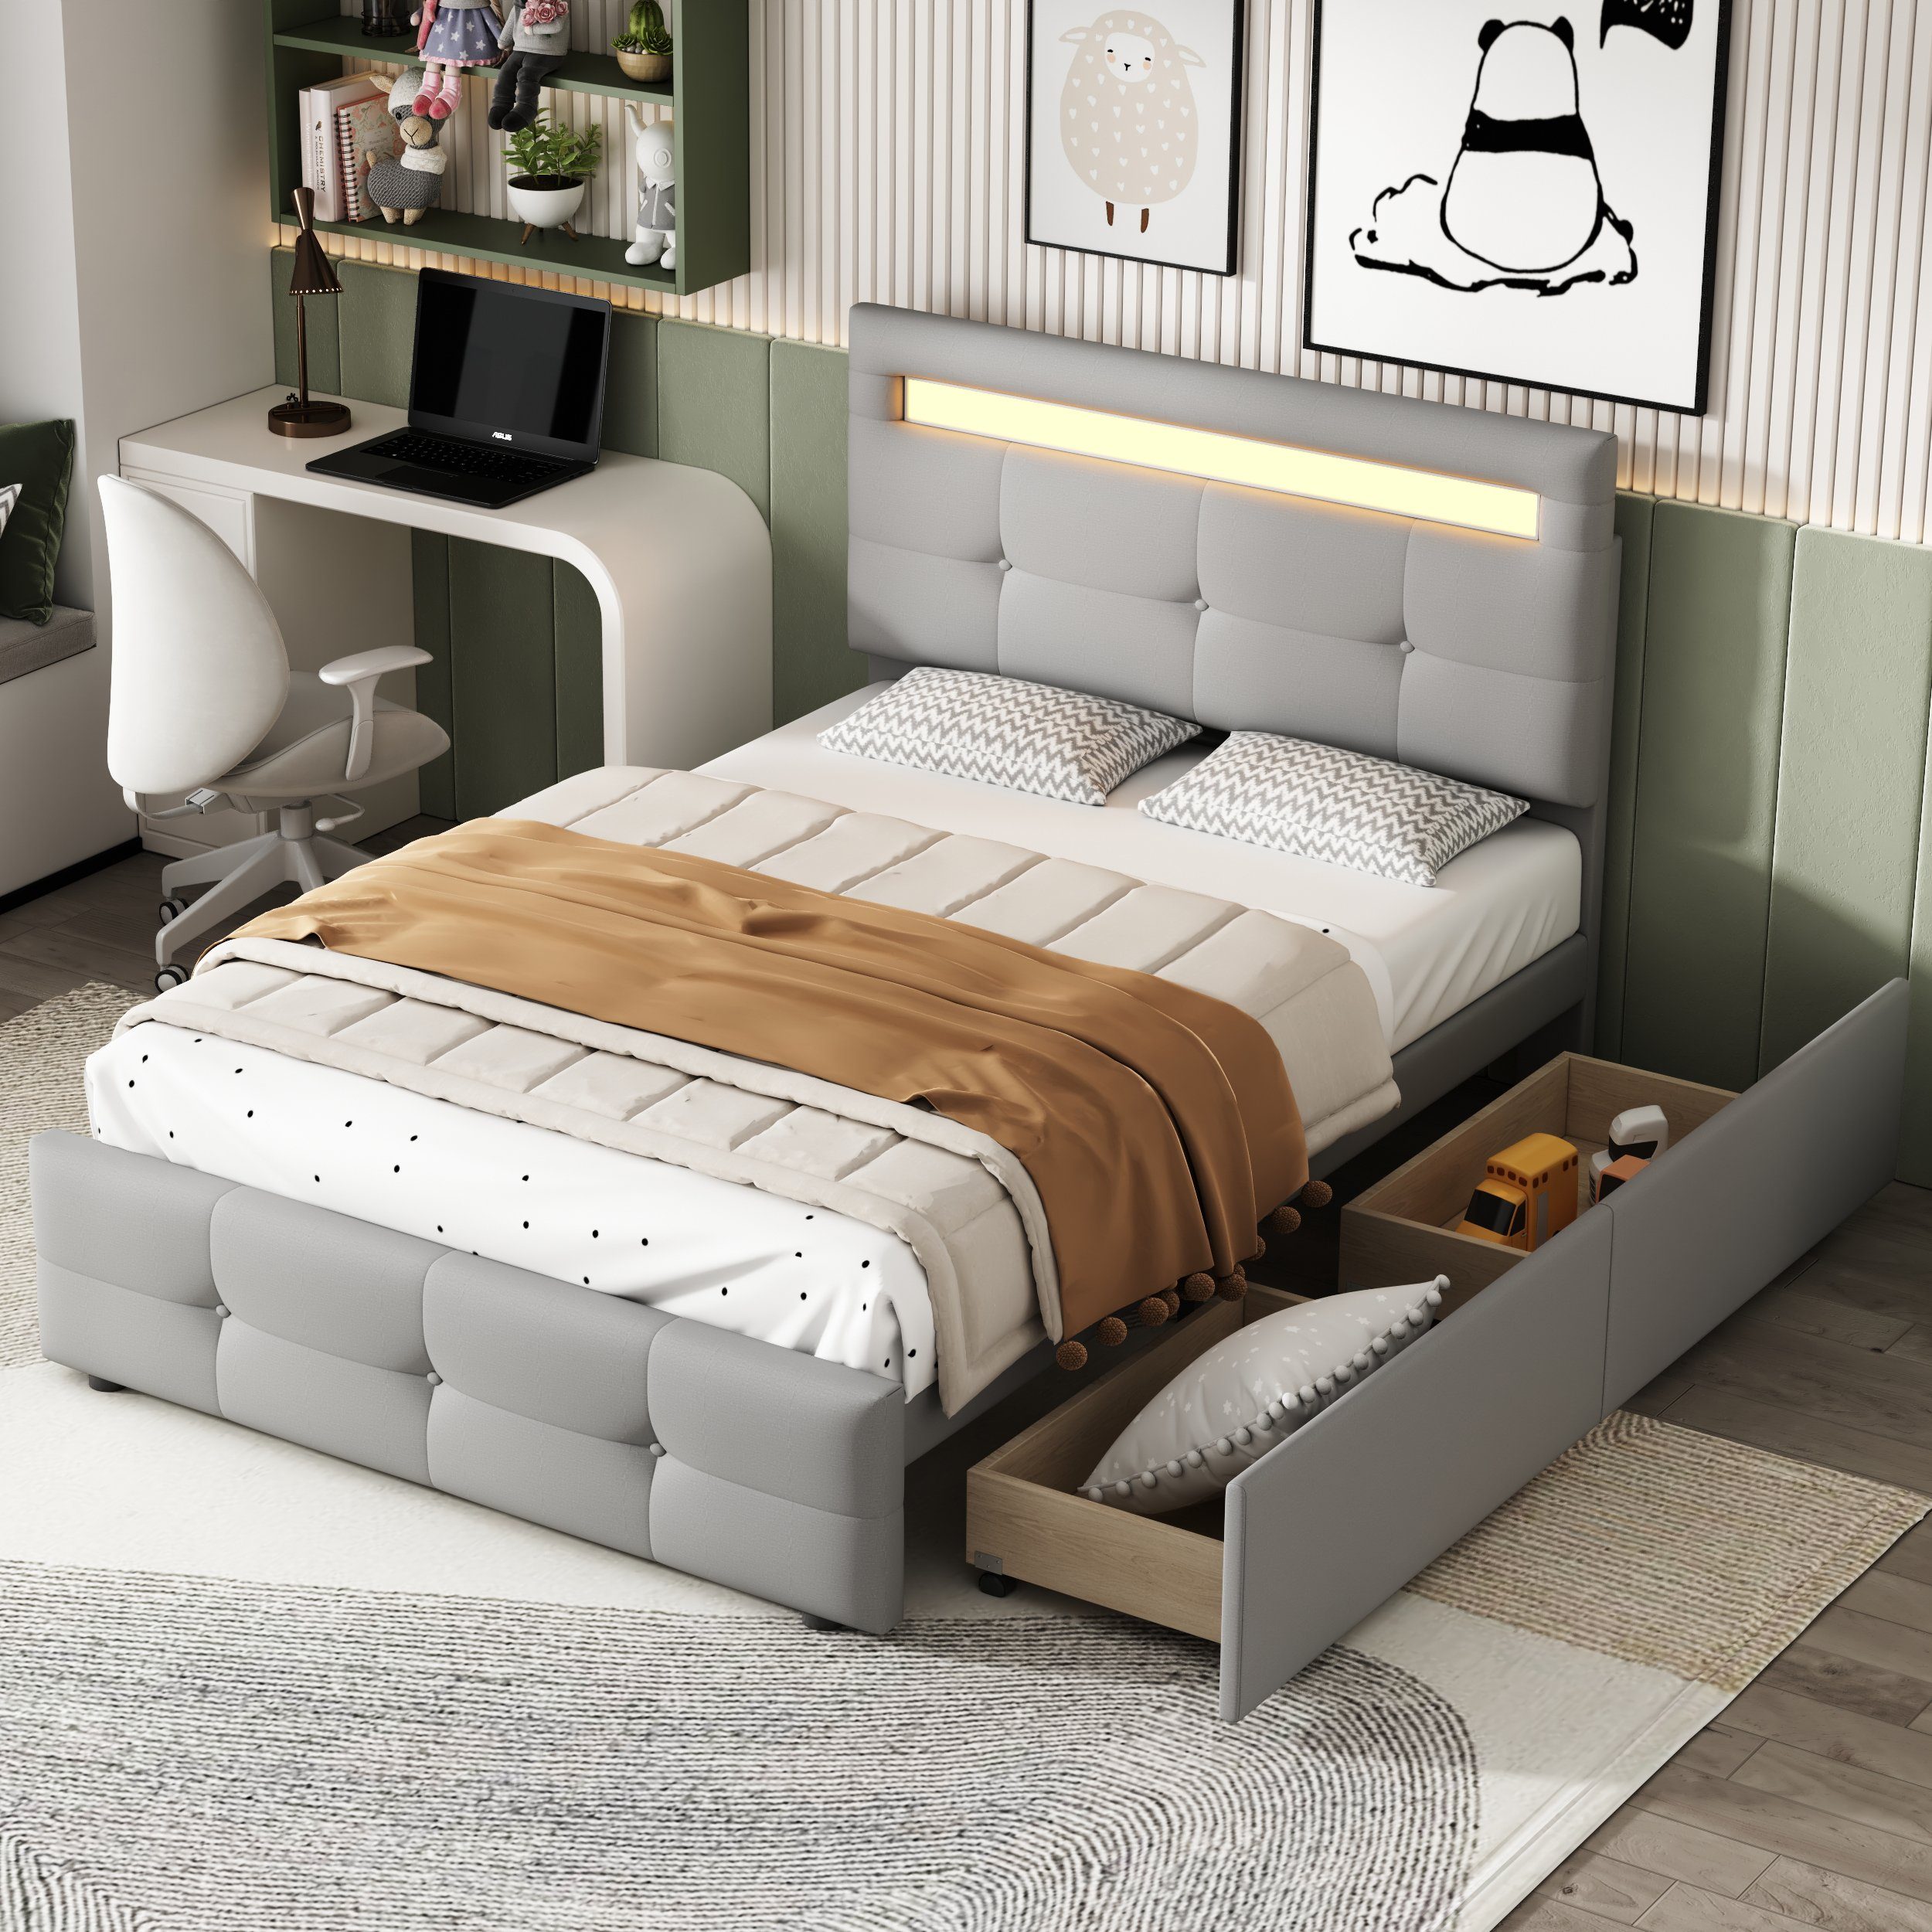 HAUSS SPLOE Bett Einzelbett Funktionsbett Bettrahmen KInderbett (mit LED-Leuchten, 2 Schubladen, hautfreundlicher Leinenpolsterung flach) grau